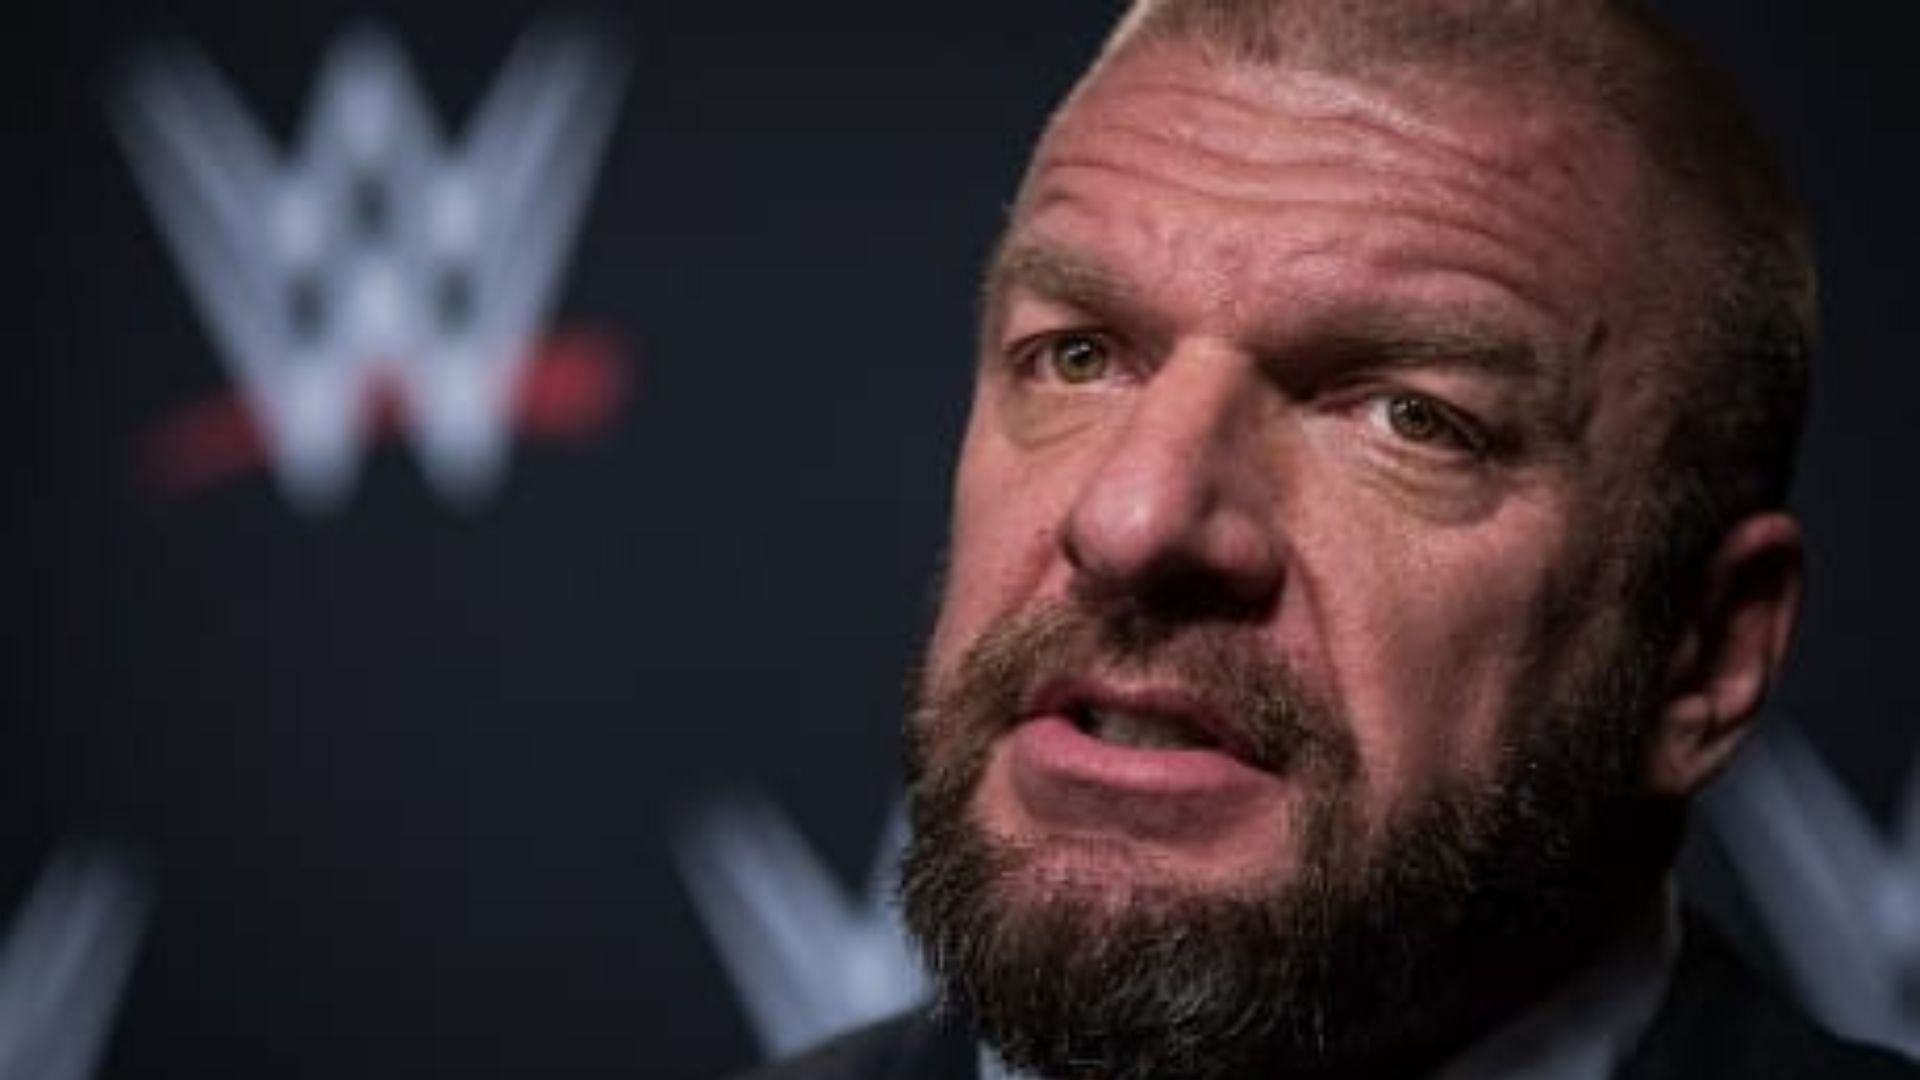 Triple H is the head booker in WWE